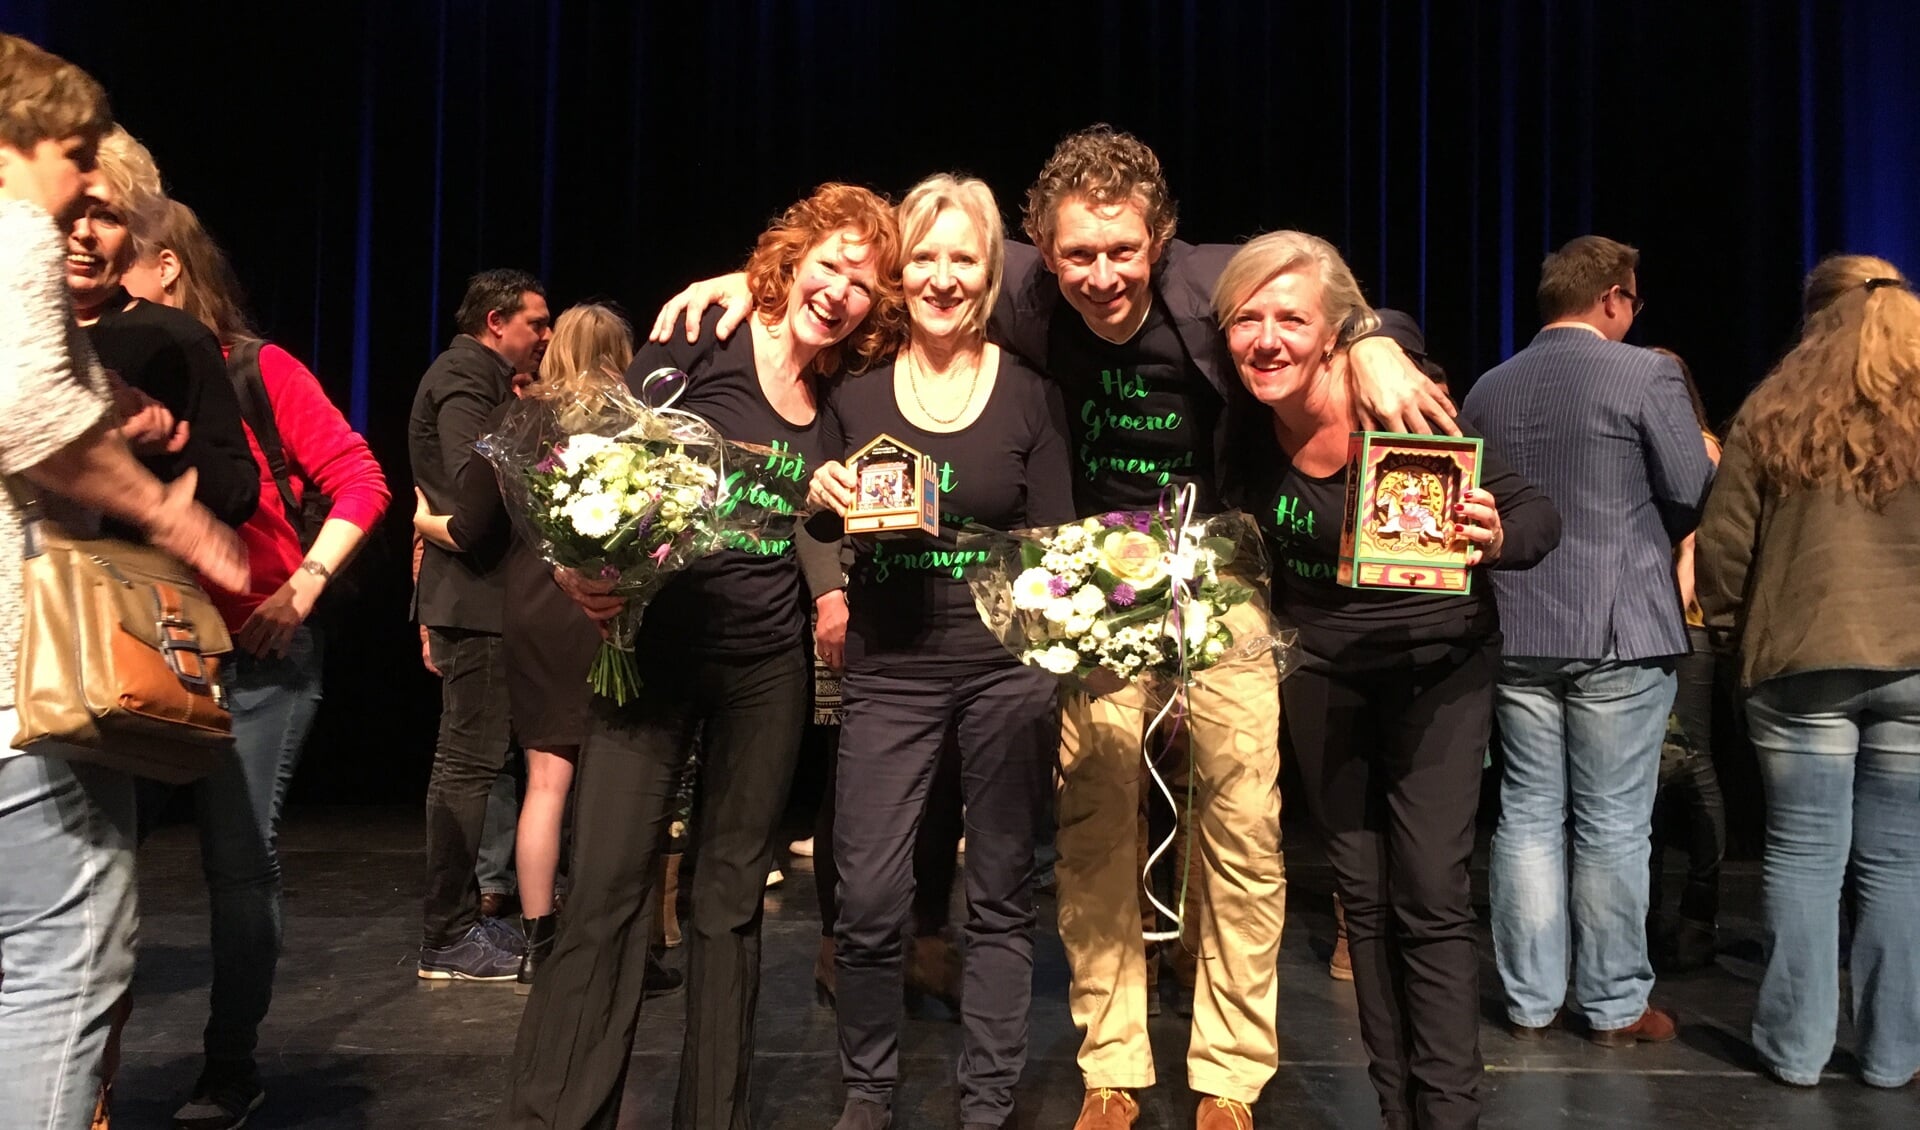  Theatergroep Het Groene Geneuzel met hun prijzen op het podium van theater De Speeldoos in Baarn. V.l.nr. Frøydis Ihle, Ilja Raspe, Thomas Vencken en Brigitte Kant.